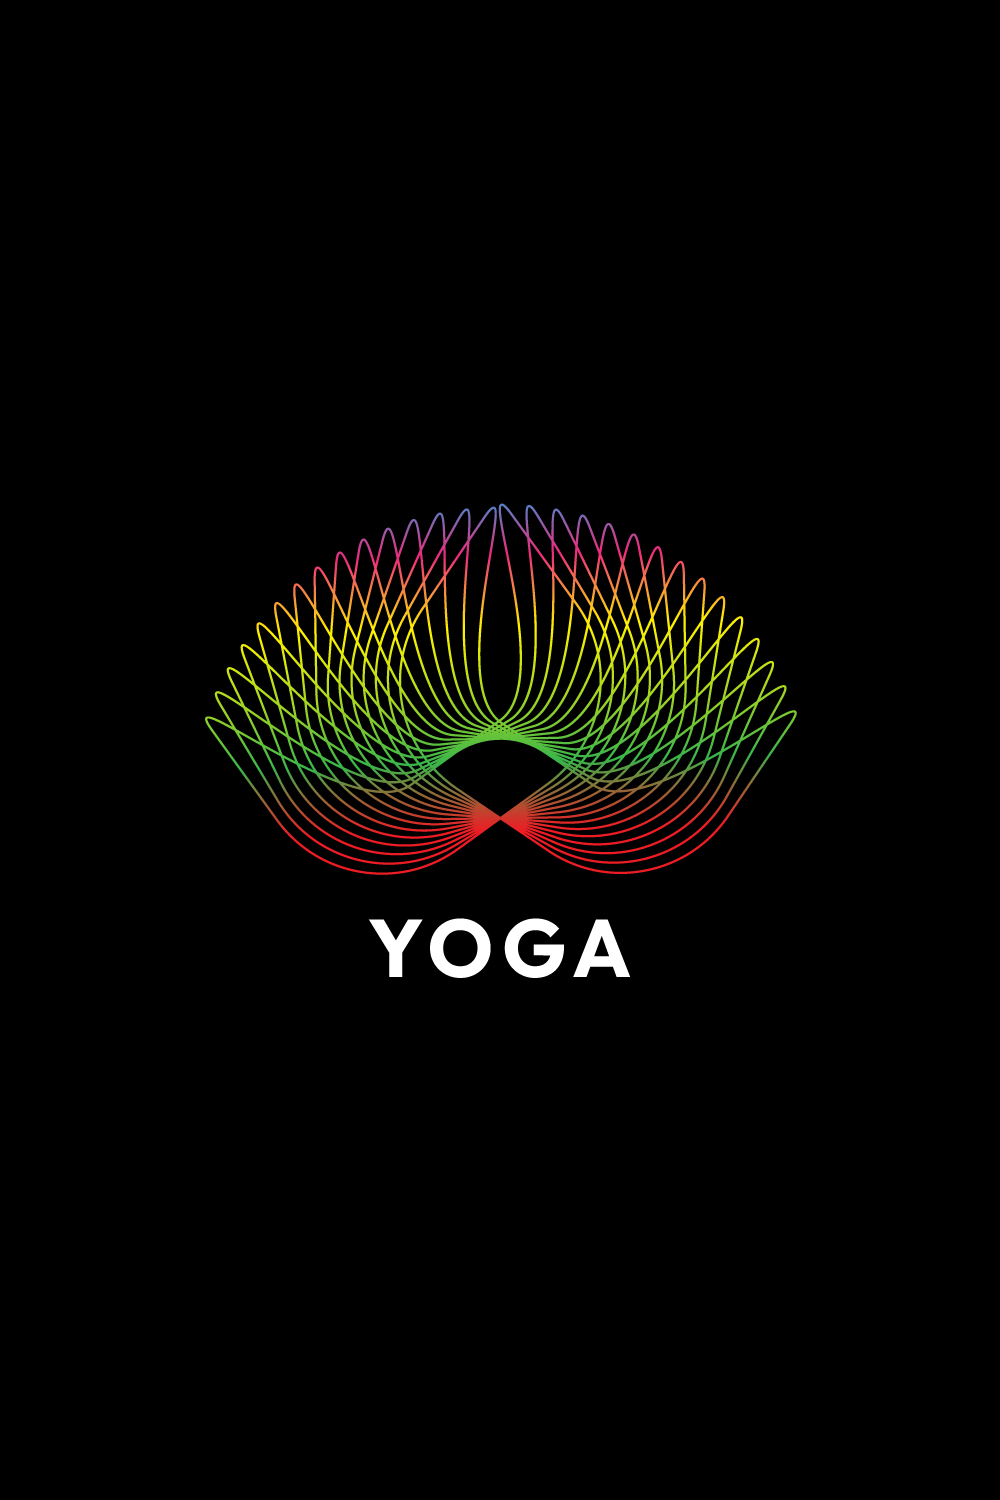 Line Art Yoga Design Bundle pinterest preview image.